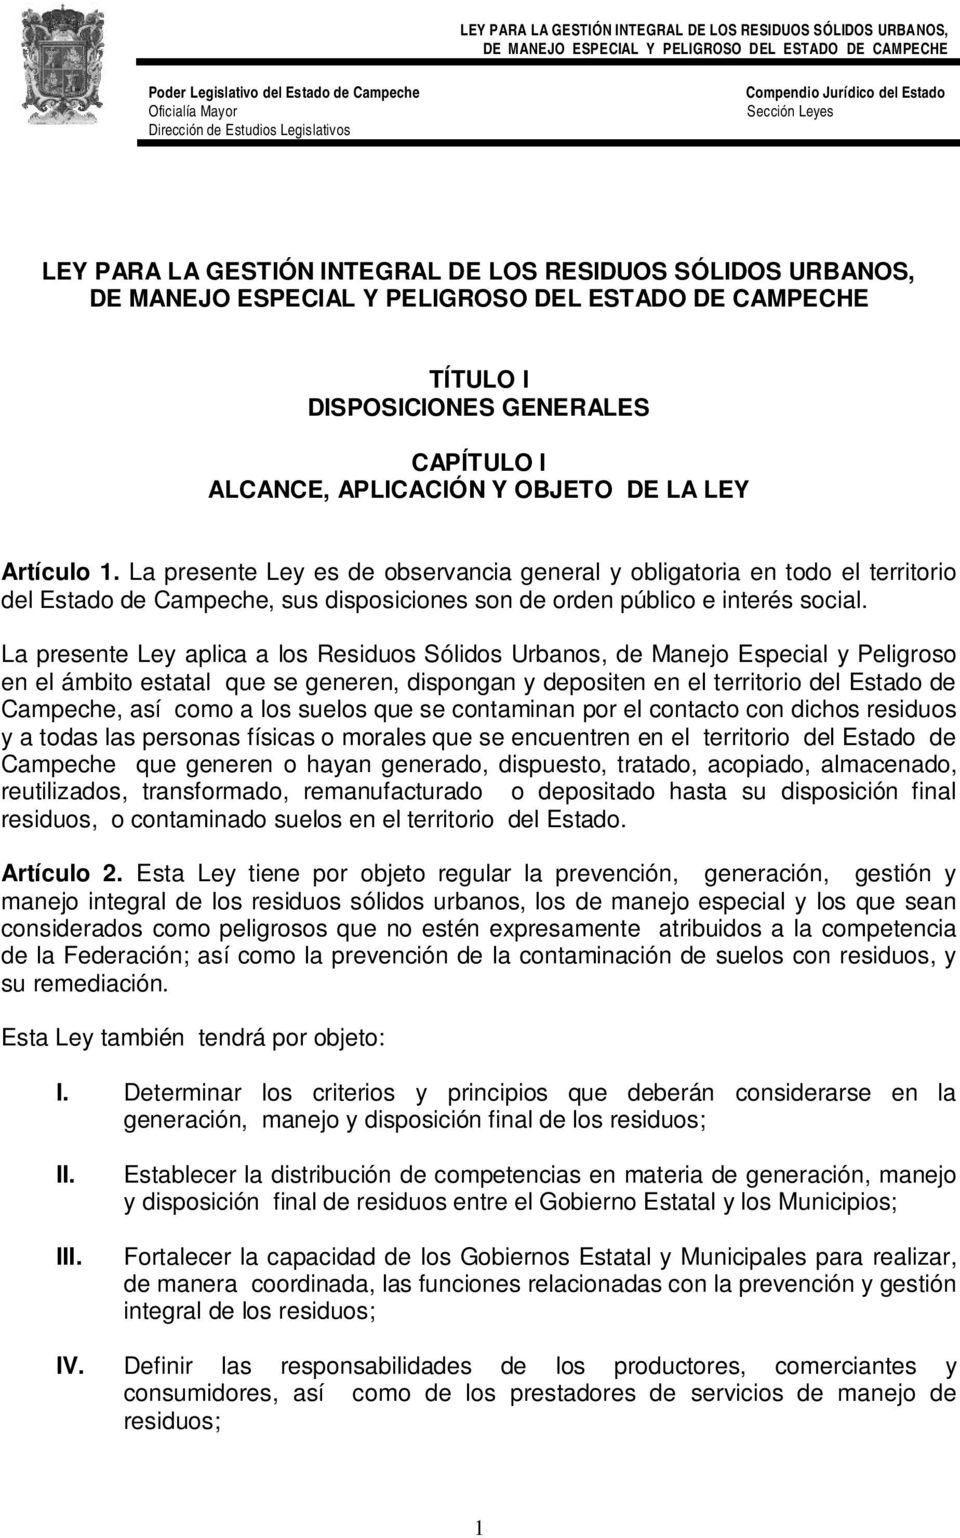 La presente Ley aplica a los Residuos Sólidos Urbanos, de Manejo Especial y Peligroso en el ámbito estatal que se generen, dispongan y depositen en el territorio del Estado de Campeche, así como a